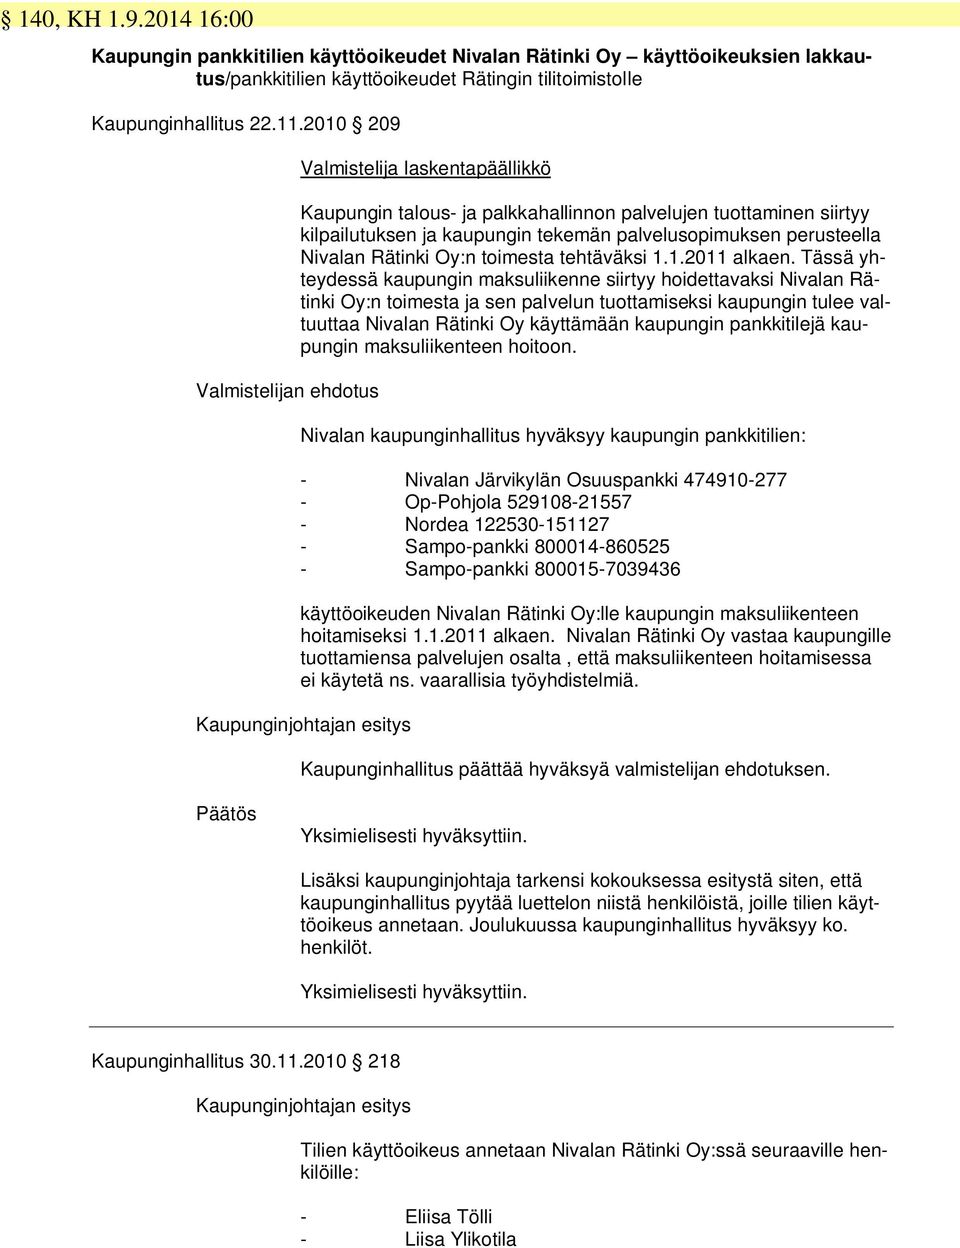 Nivalan Rätinki Oy:n toimesta tehtäväksi 1.1.2011 alkaen.